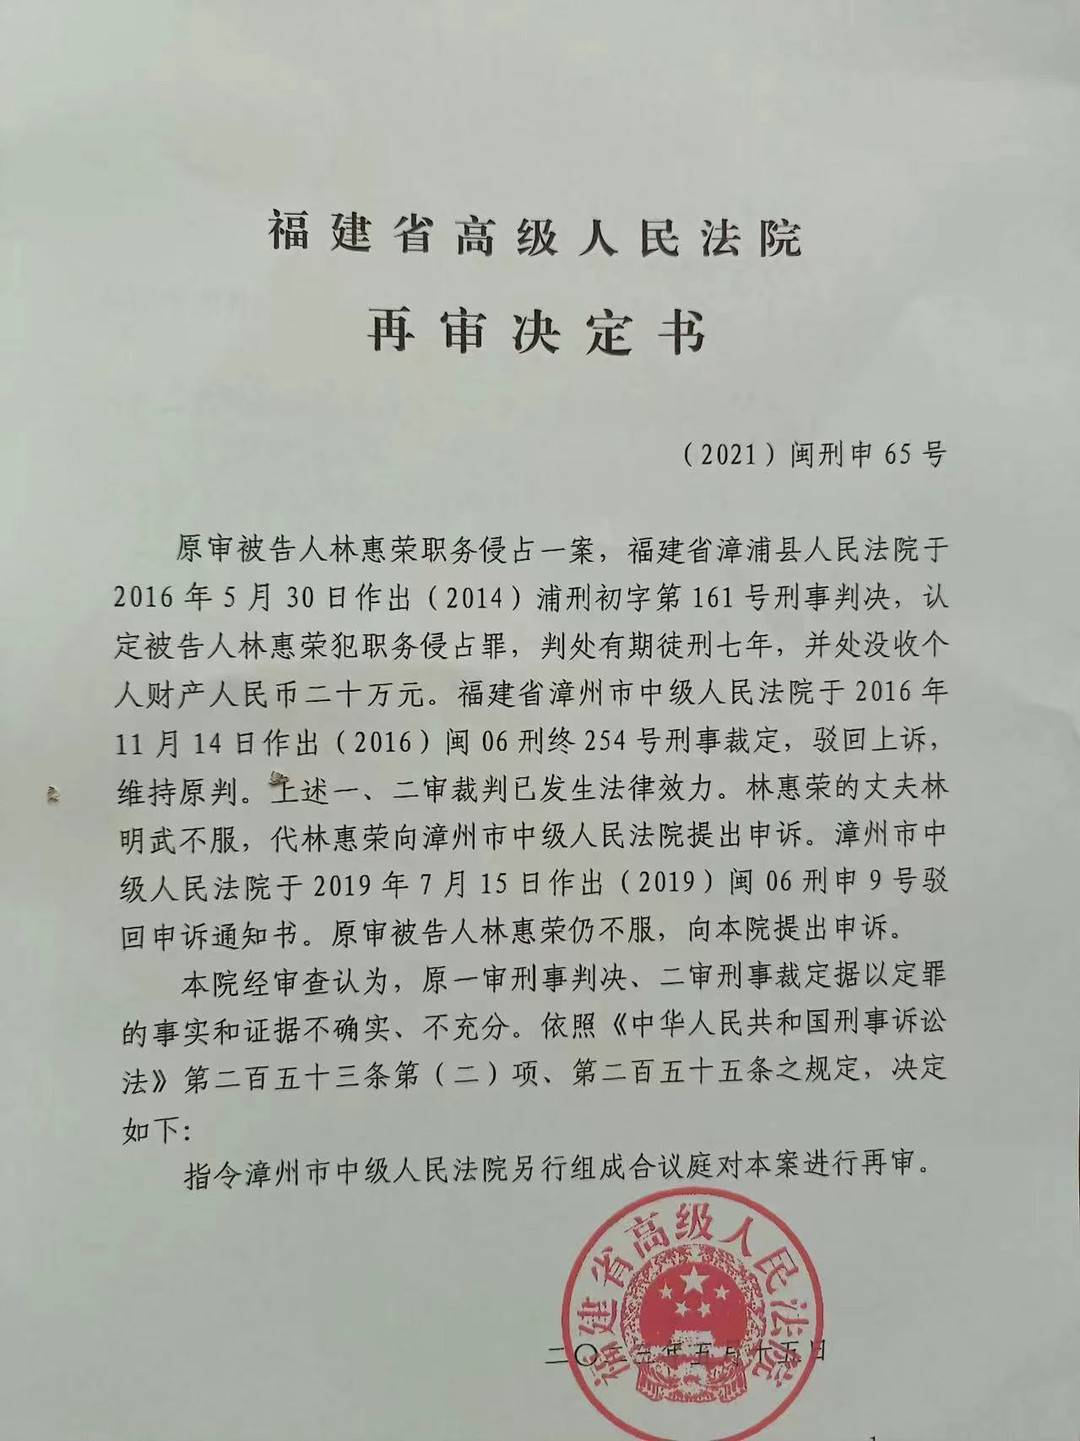 福建高院指令再审“女商人林惠荣案” 转移股权是否应认定职务侵占罪？